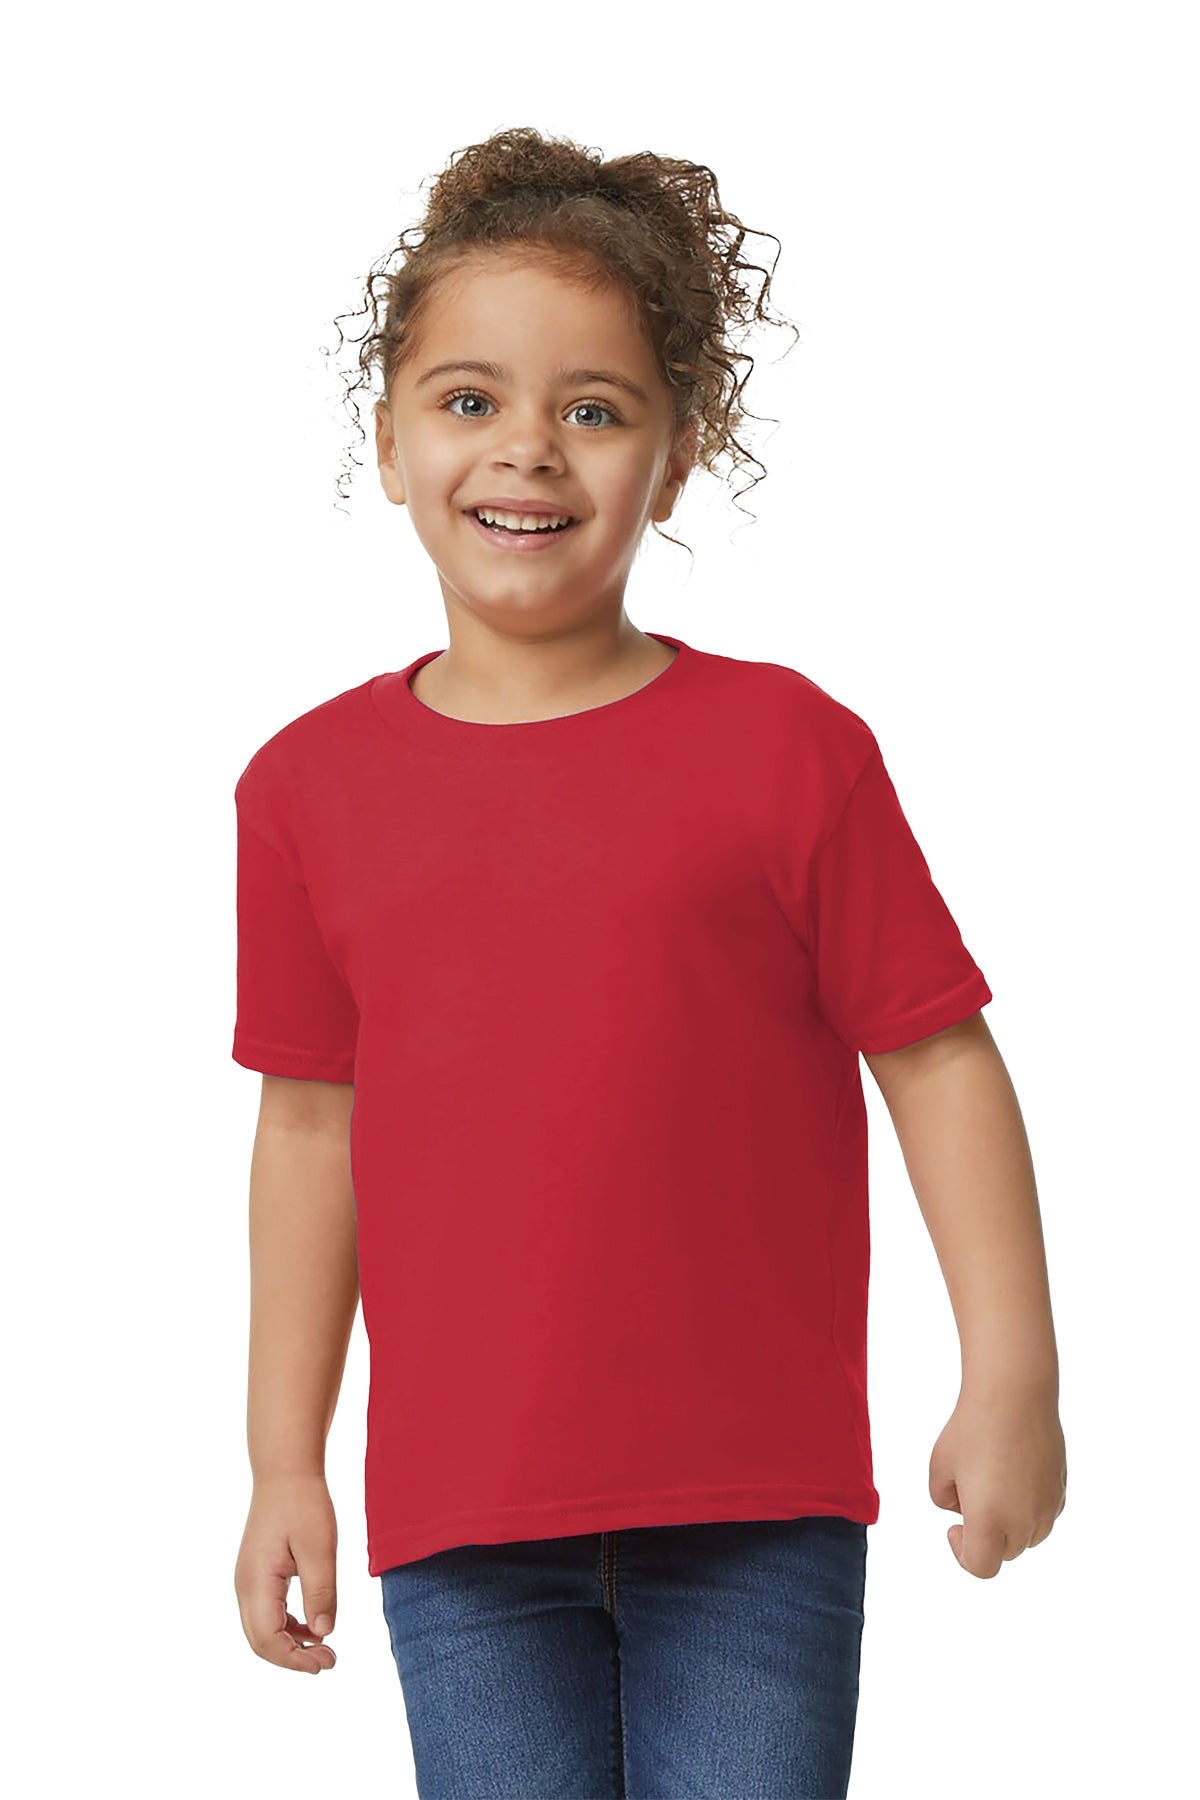 Gilden 5100P Toddler T-Shirt 3T / Red